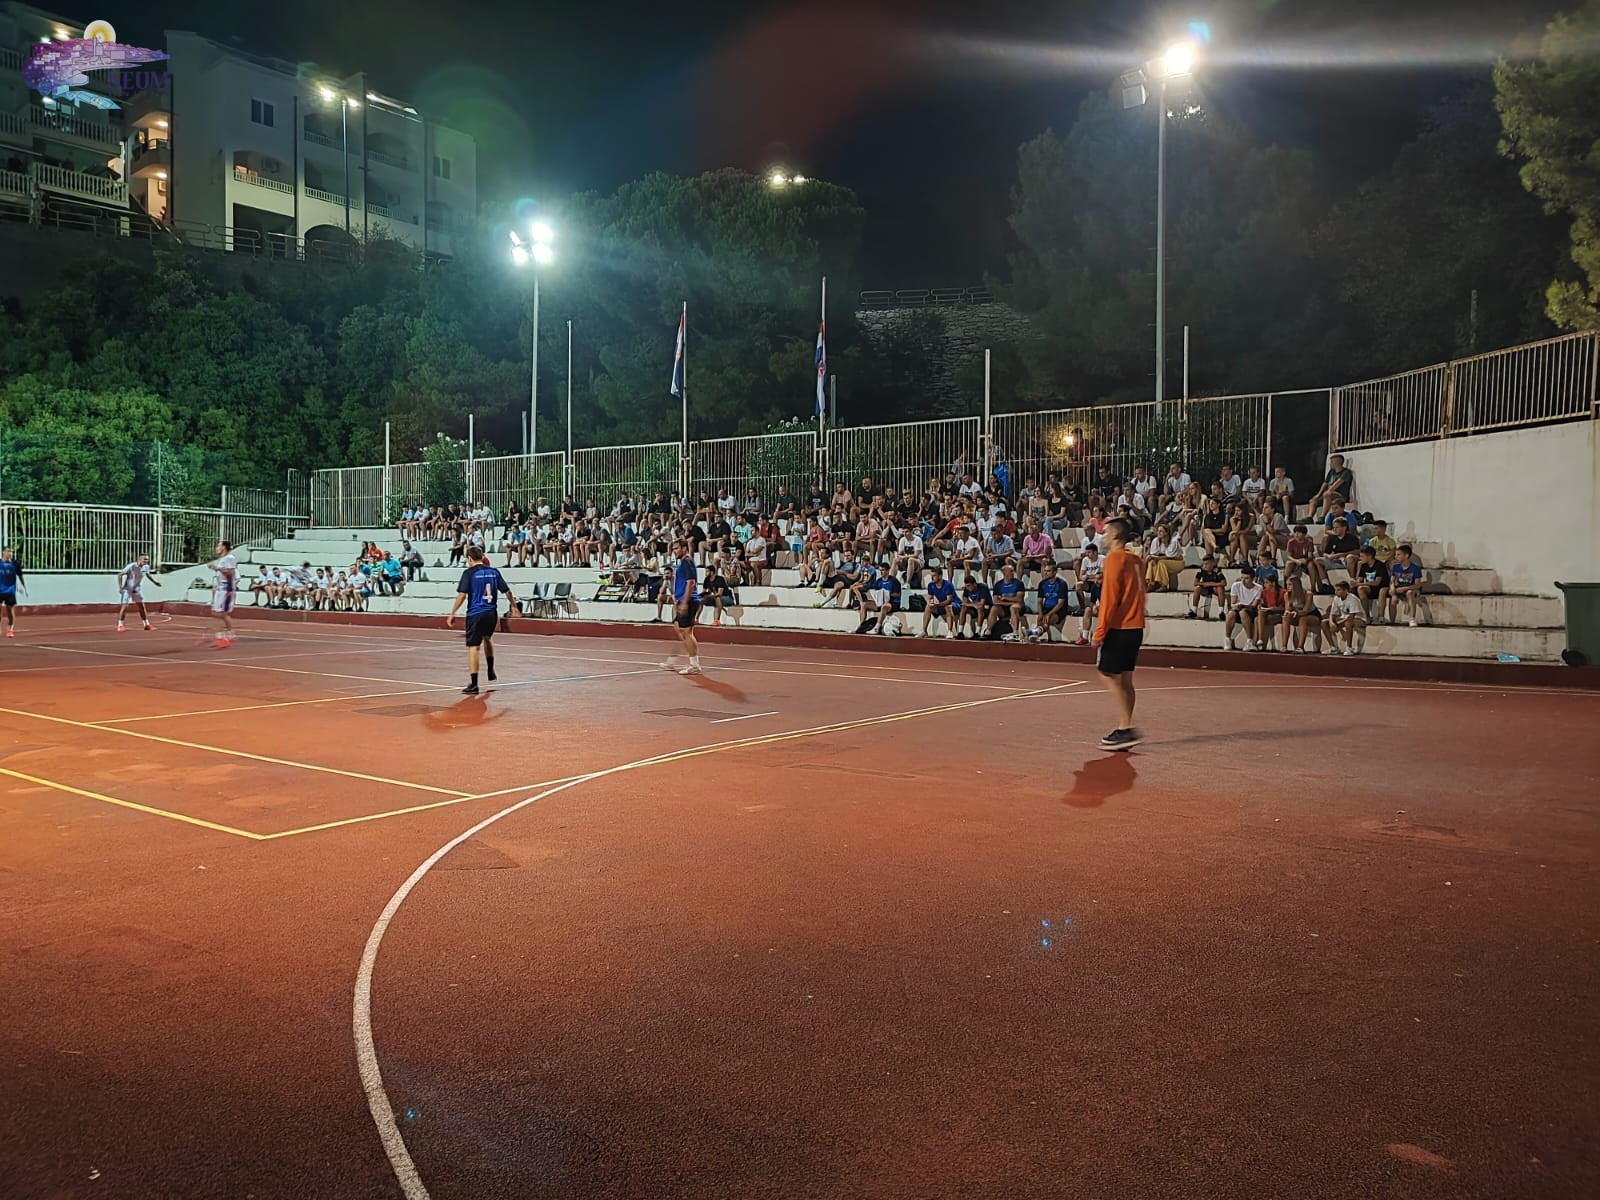 završena je druga večer lige mjesnih zajednica, večeras na rasporedu polufinalne utakmice